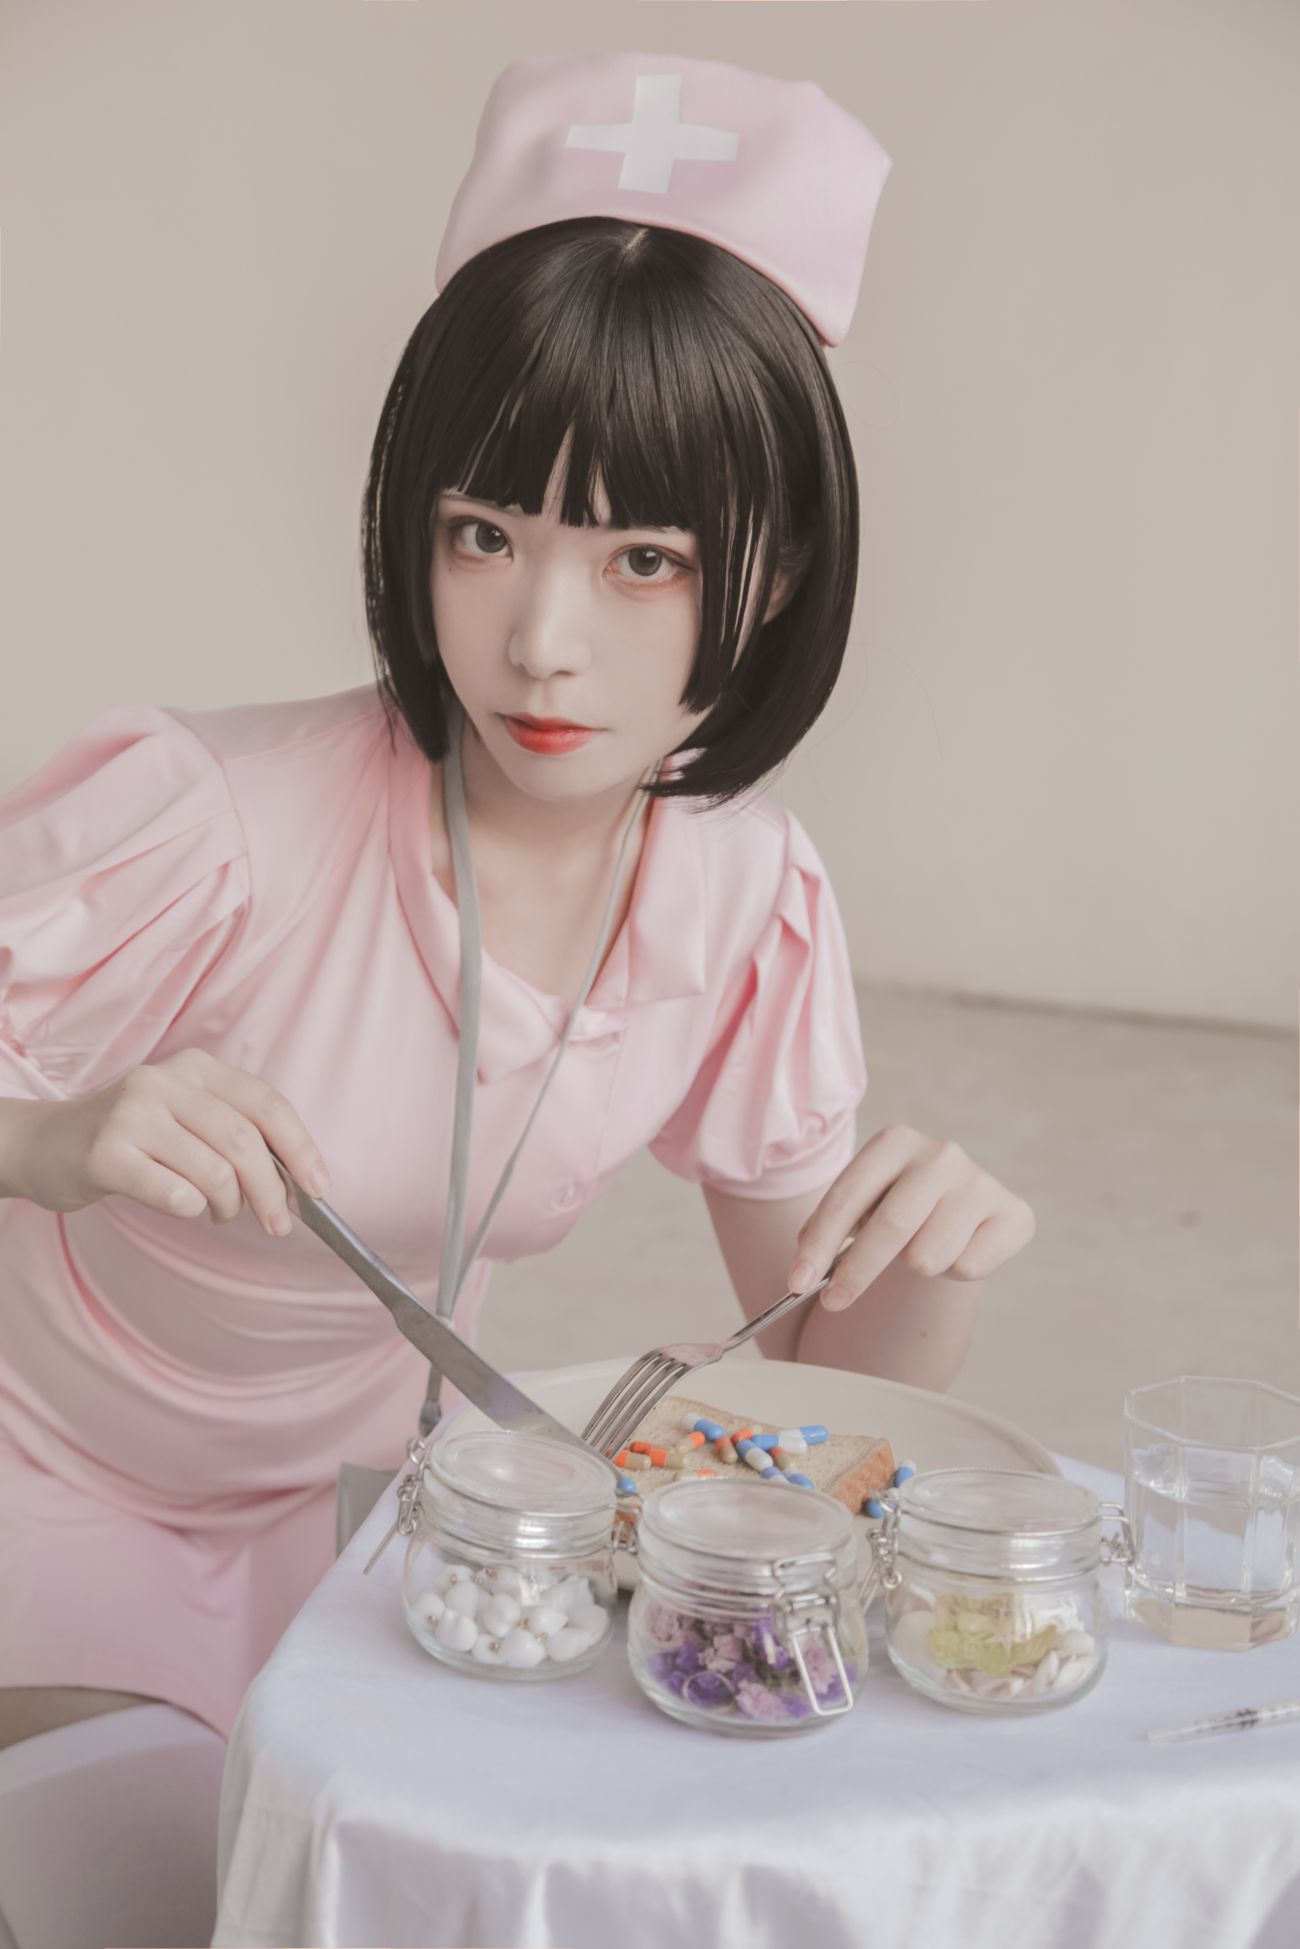 微博美少女Fushii海堂Cosplay性感写真护士 (33)